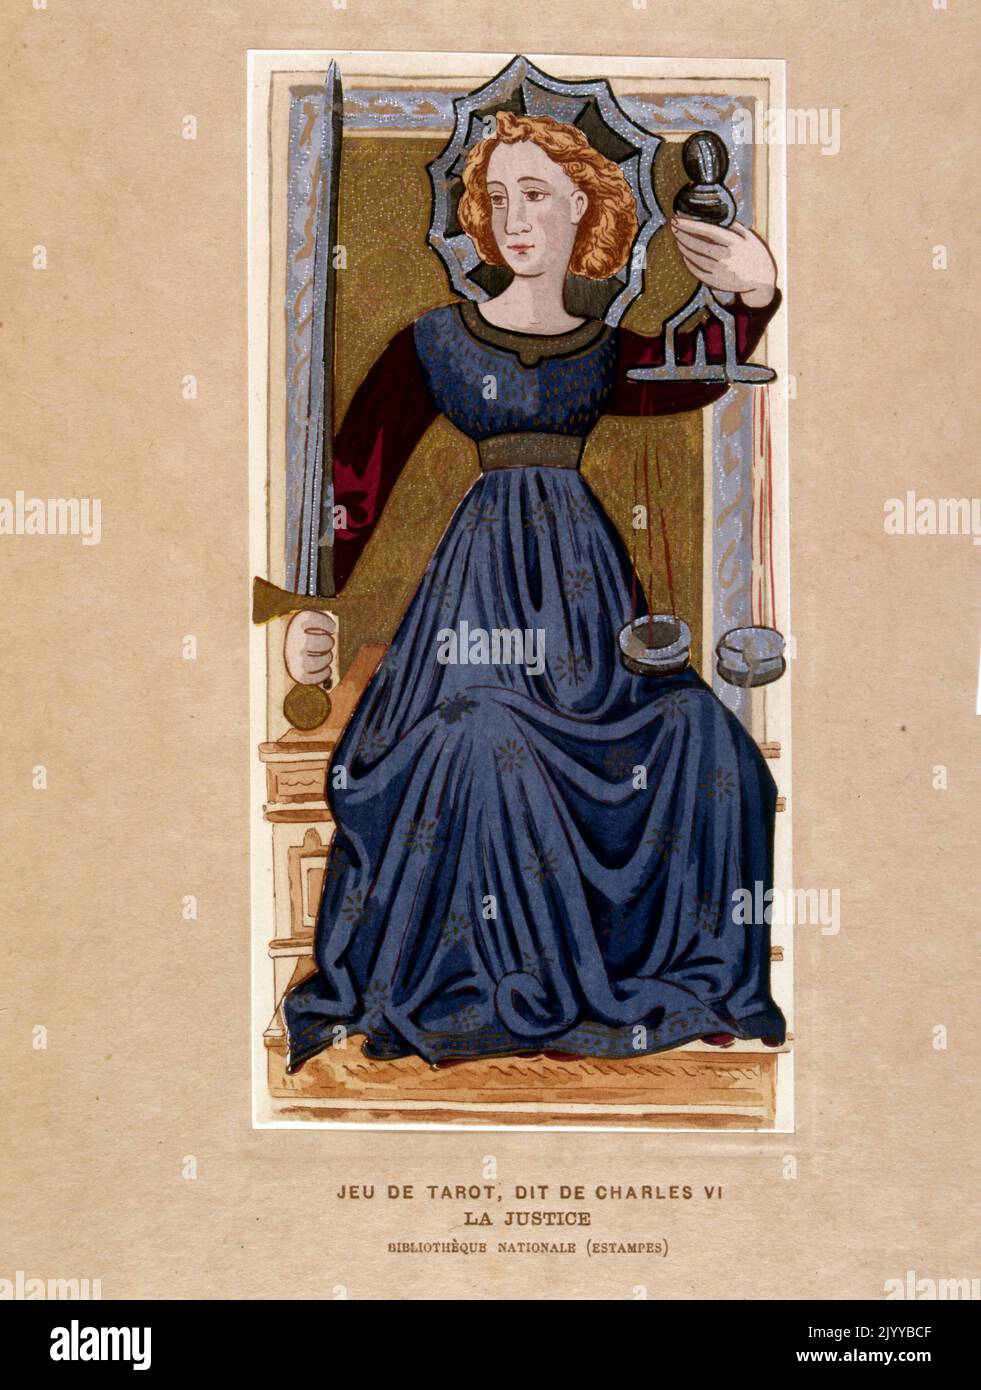 Farbige Illustration einer Karte aus einem Tarot-Set, das angeblich Karl VI. Gehört, einer jungen Frau, die Gerechtigkeit mit Schuppen und einem Schwert vertritt. Stockfoto